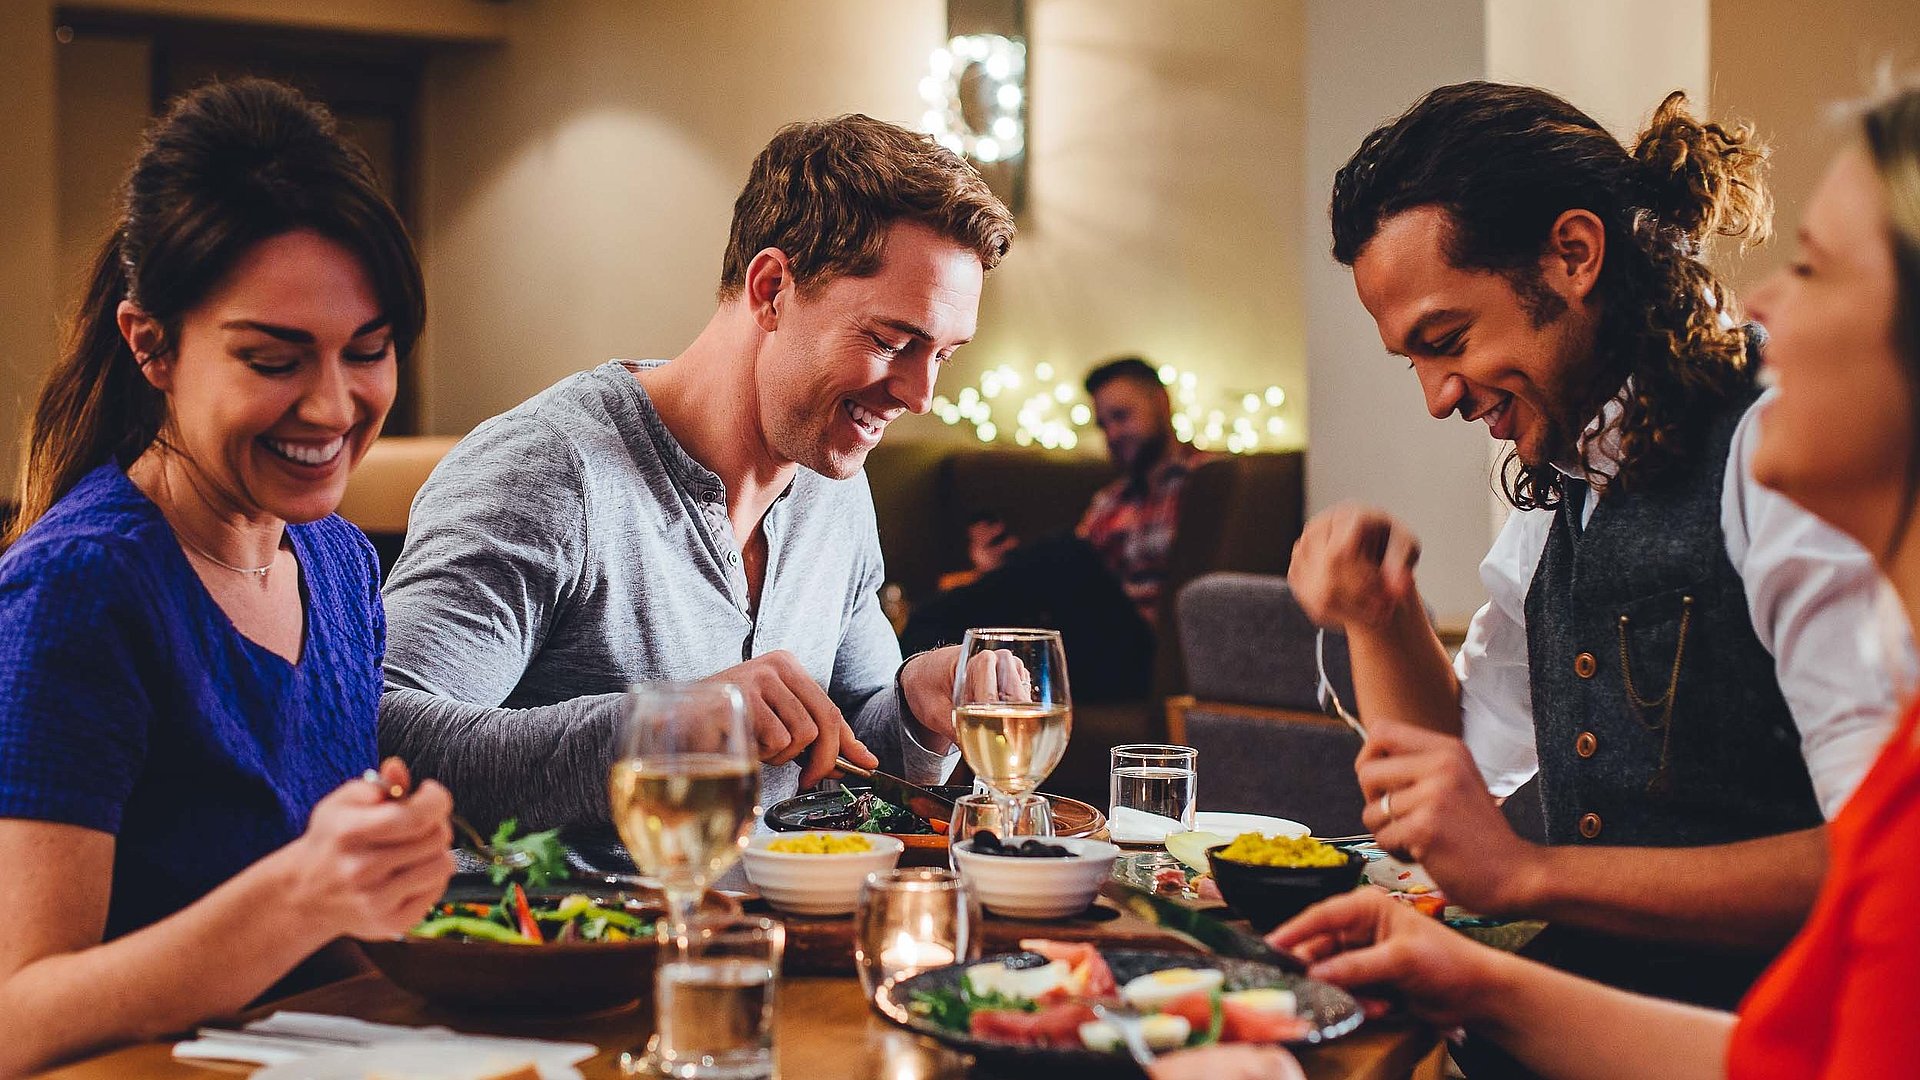 Gastronomie in Mittelfranken - eine Gruppe von Gästen lacht zusammen an einem bedeckten Tisch